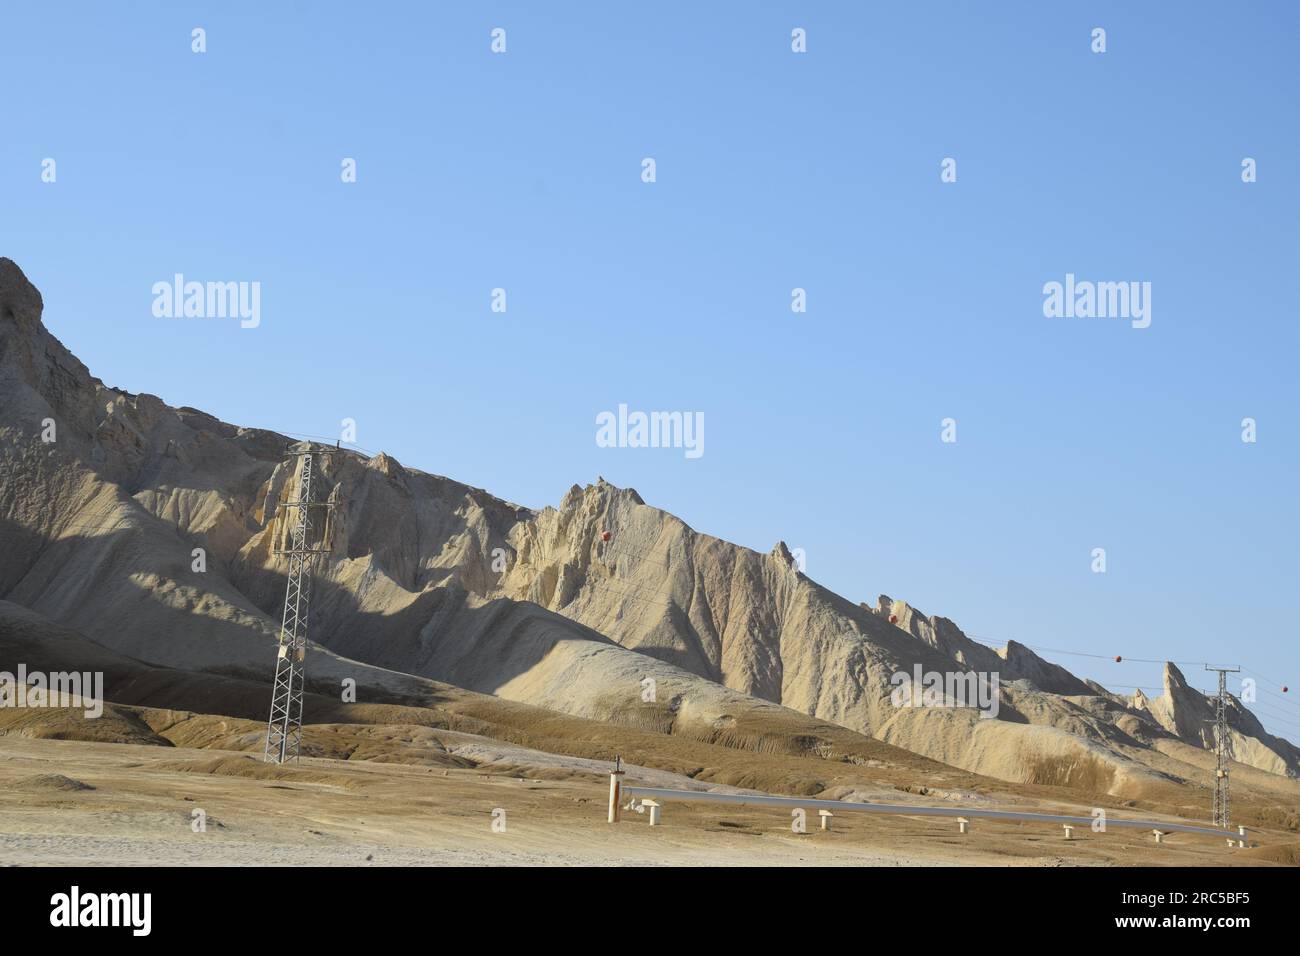 Lot's Wife Rock Formation - Monte Sodom vicino al bacino inferiore del Mar morto in Israele Foto Stock